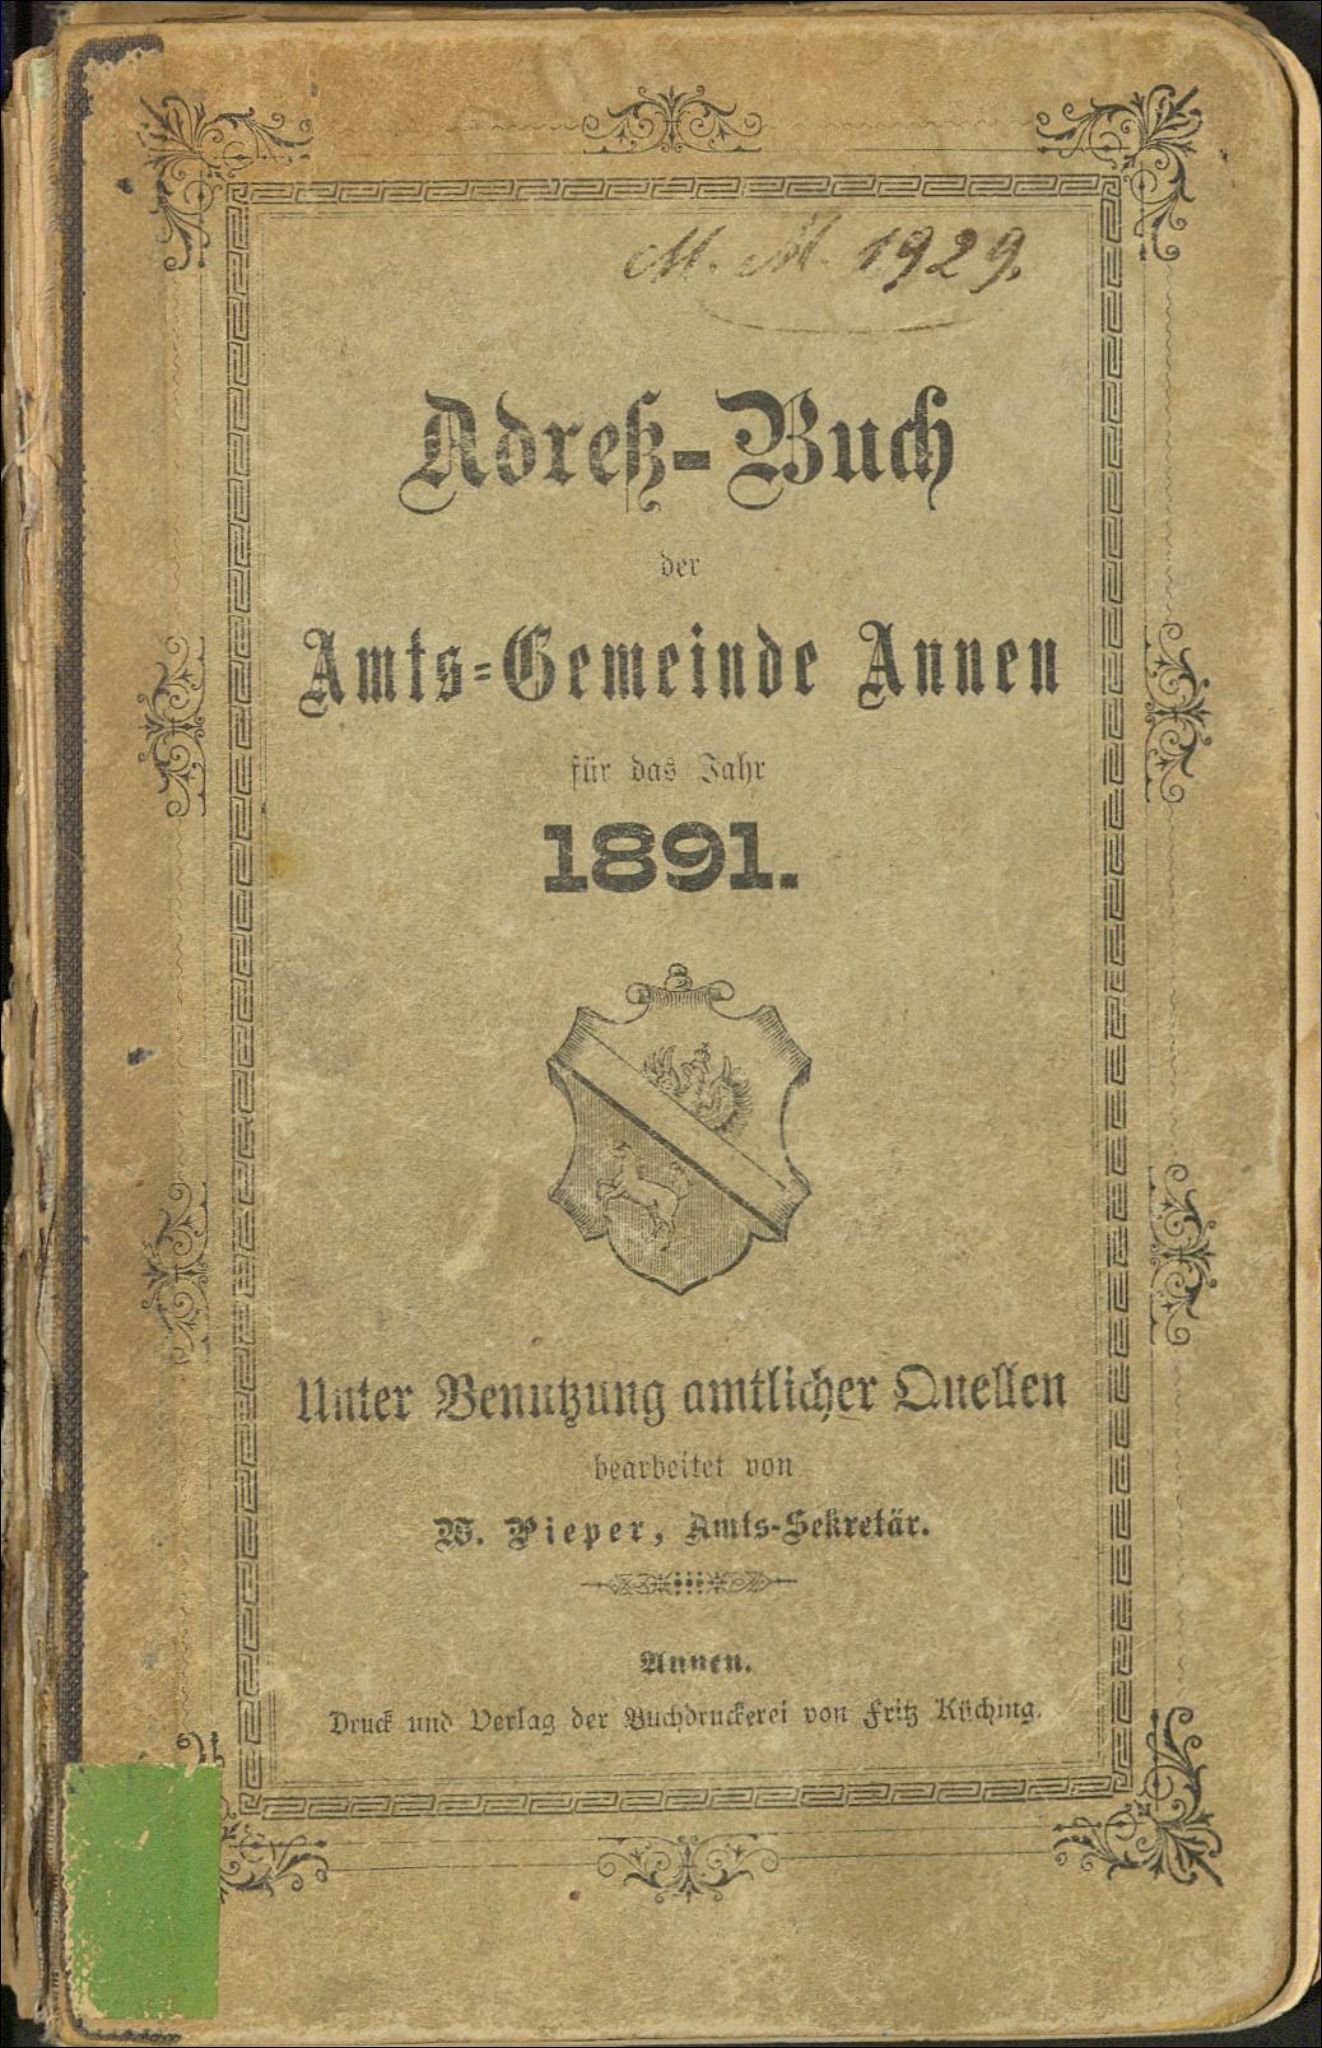 Adreß-Buch der Amts-Gemeinde Annen für das Jahr 1891